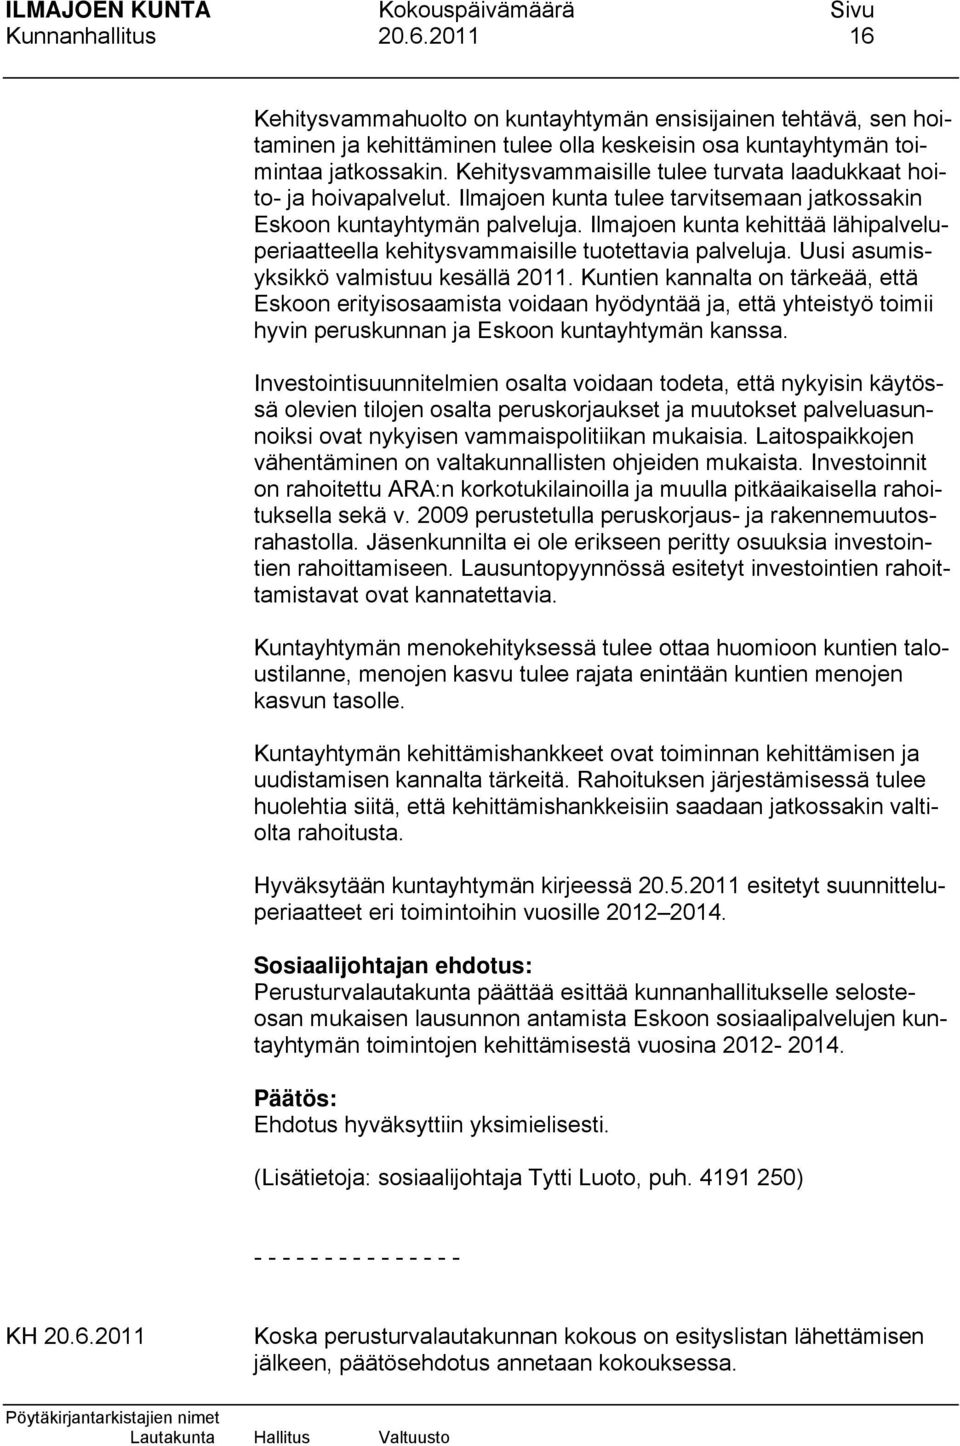 Ilmajoen kunta kehittää lähipalveluperiaatteella kehitysvammaisille tuotettavia palveluja. Uusi asumisyksikkö valmistuu kesällä 2011.